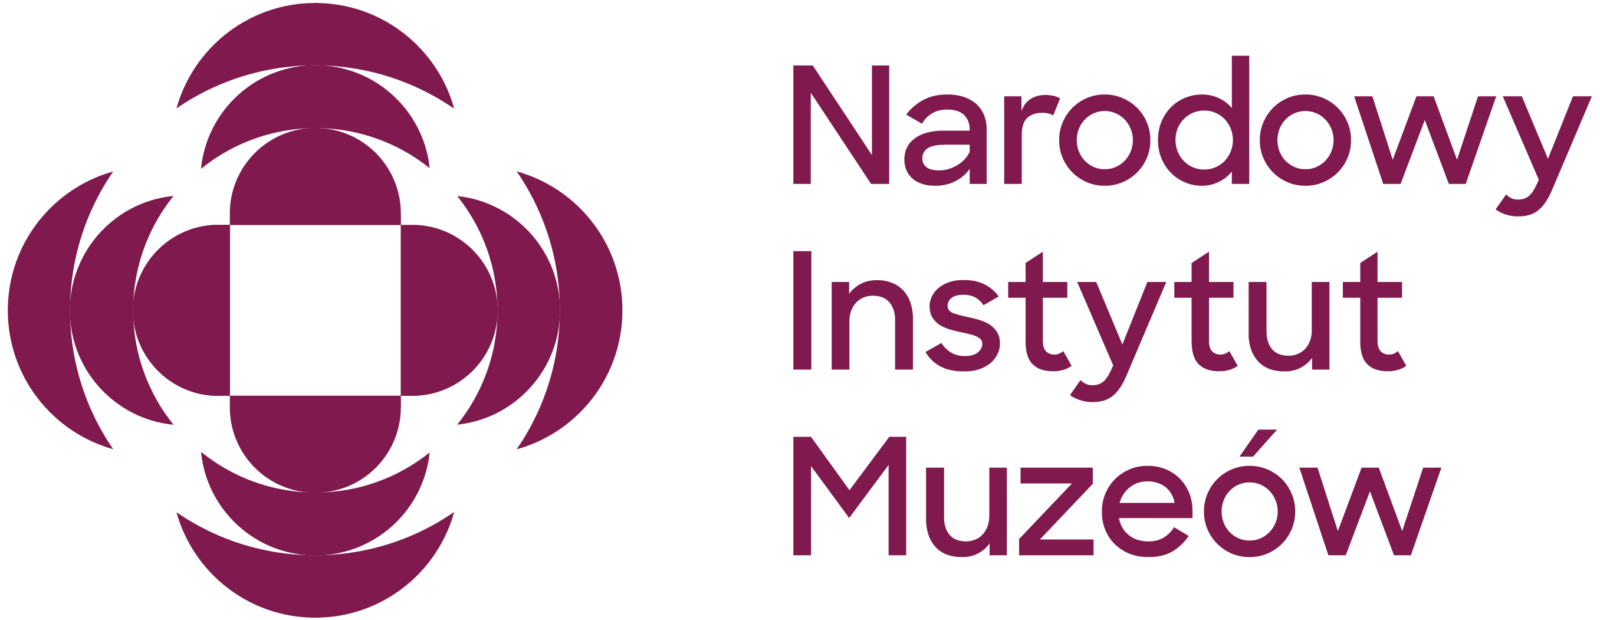 logotyp Narodowego Instytutu Muzeów